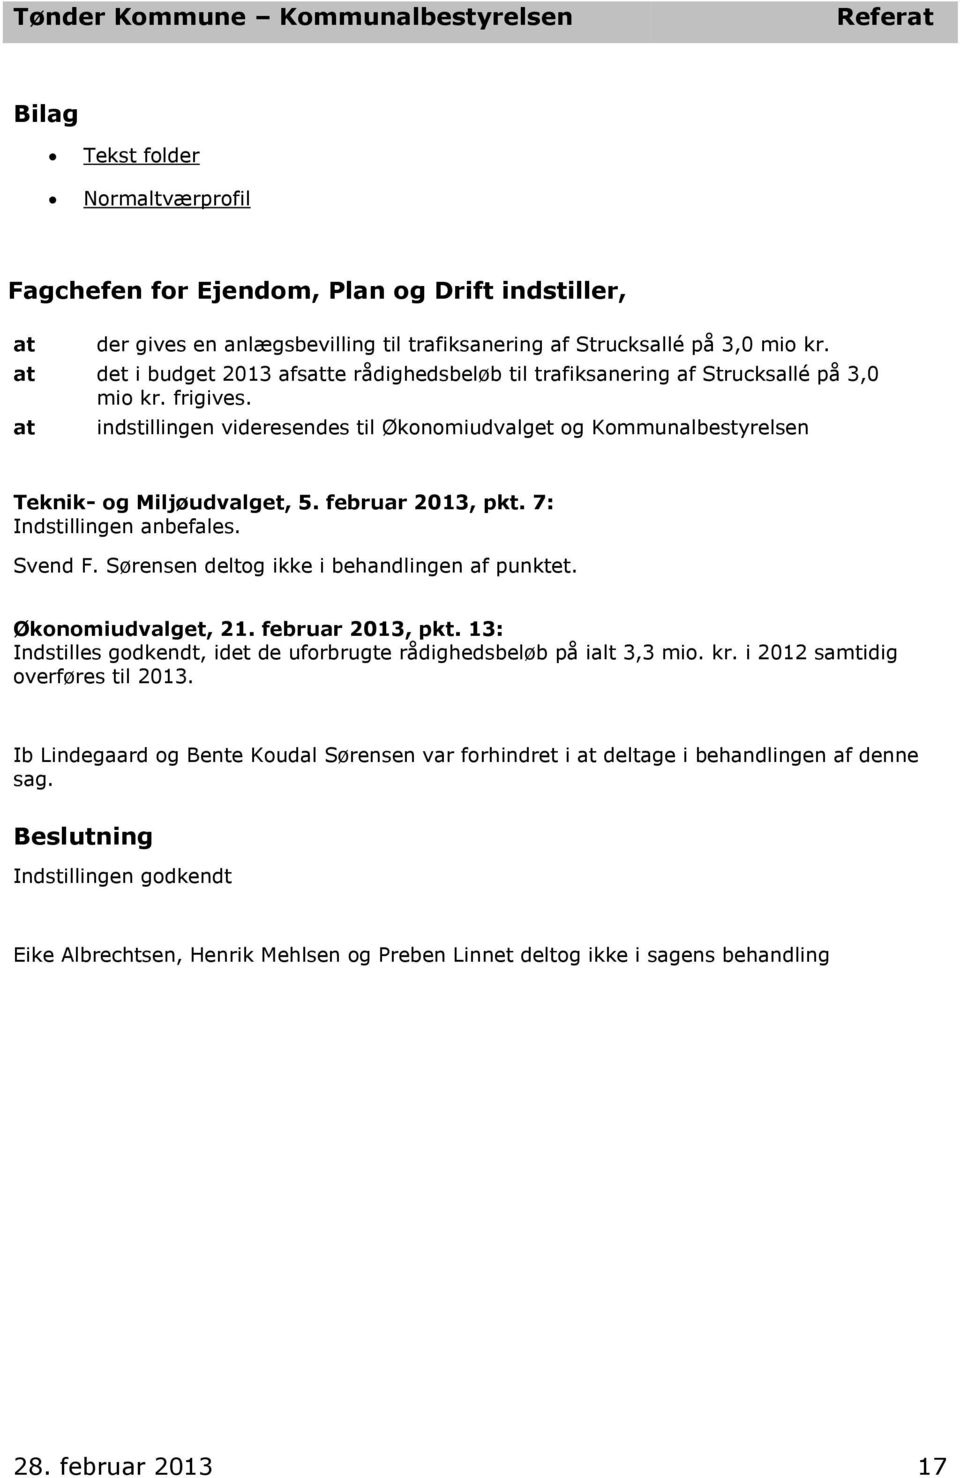 februar 2013, pkt. 7: Indstillingen anbefales. Svend F. Sørensen deltog ikke i behandlingen af punktet. Økonomiudvalget, 21. februar 2013, pkt.